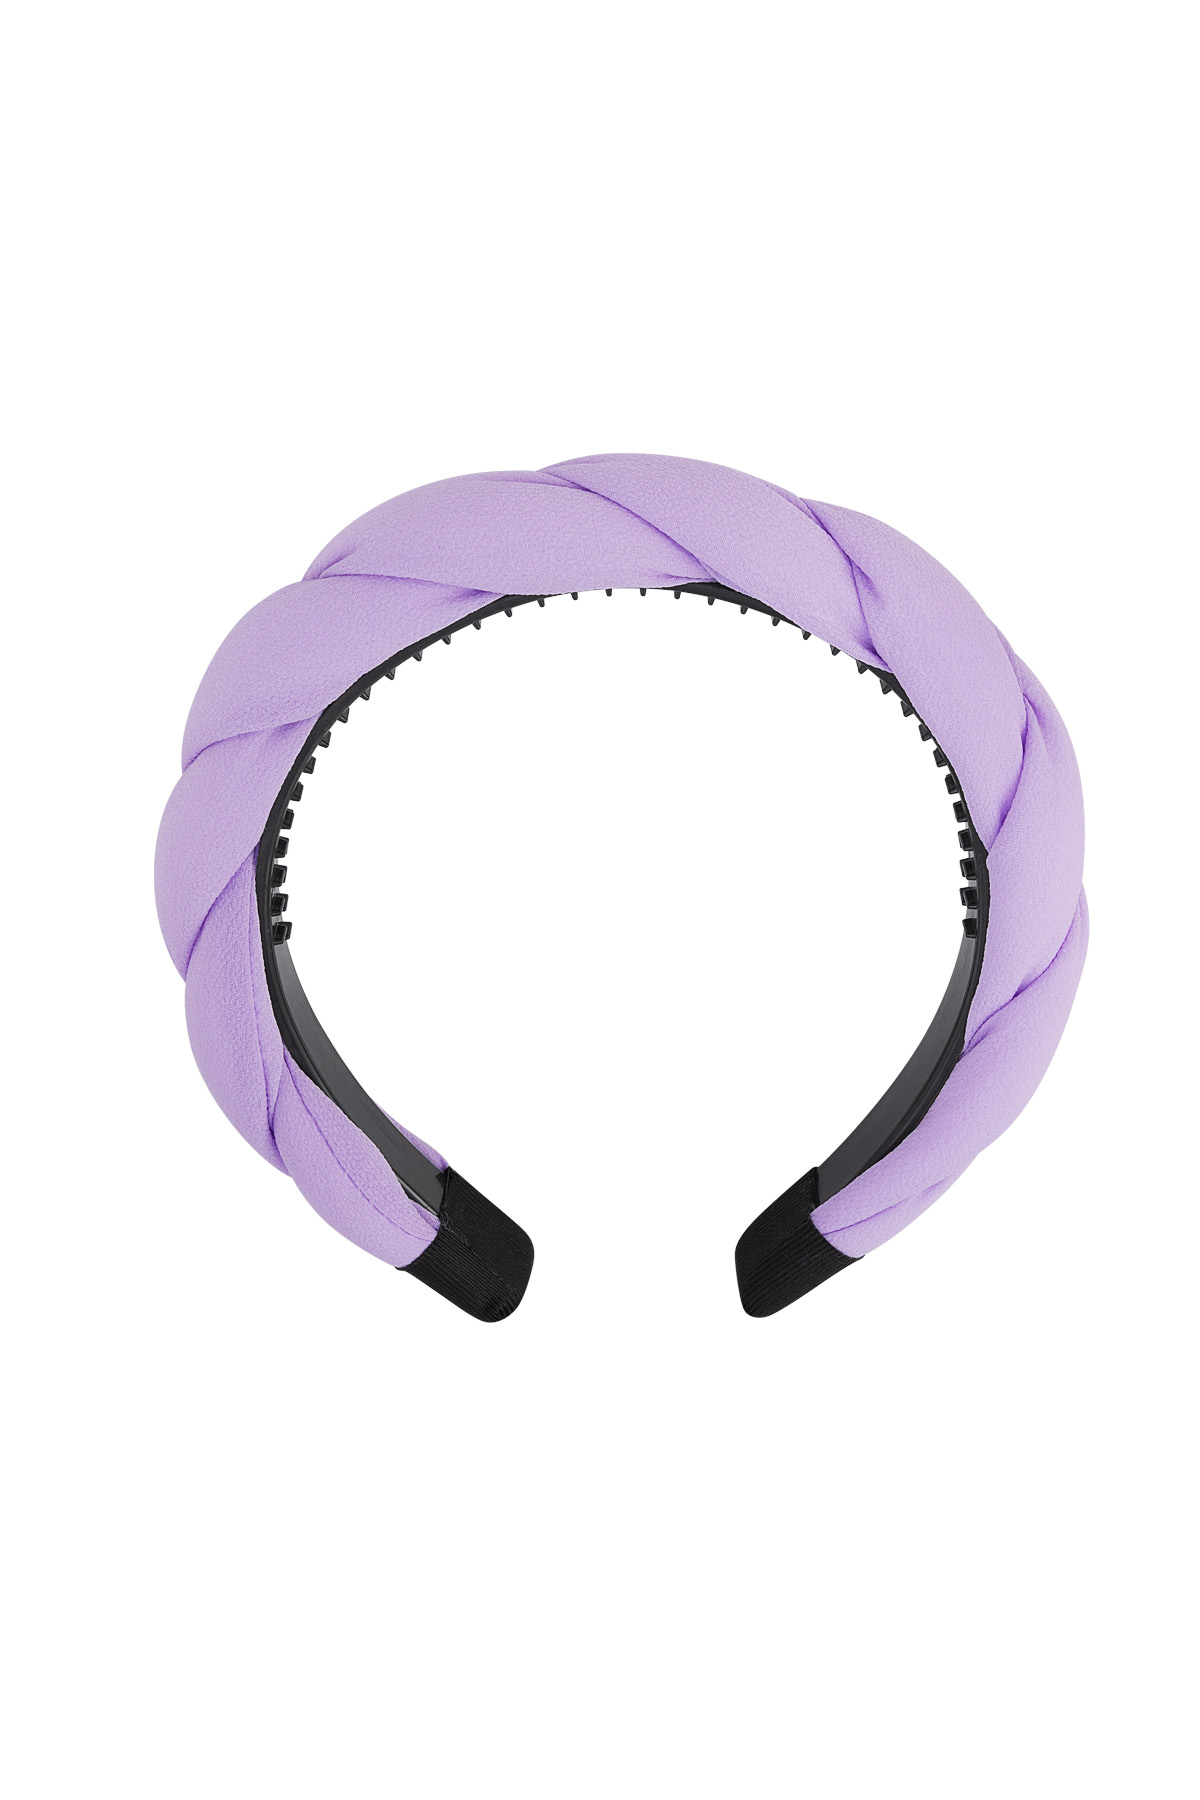 Dettaglio treccia fascia per capelli - lilla Purple Plastic h5 